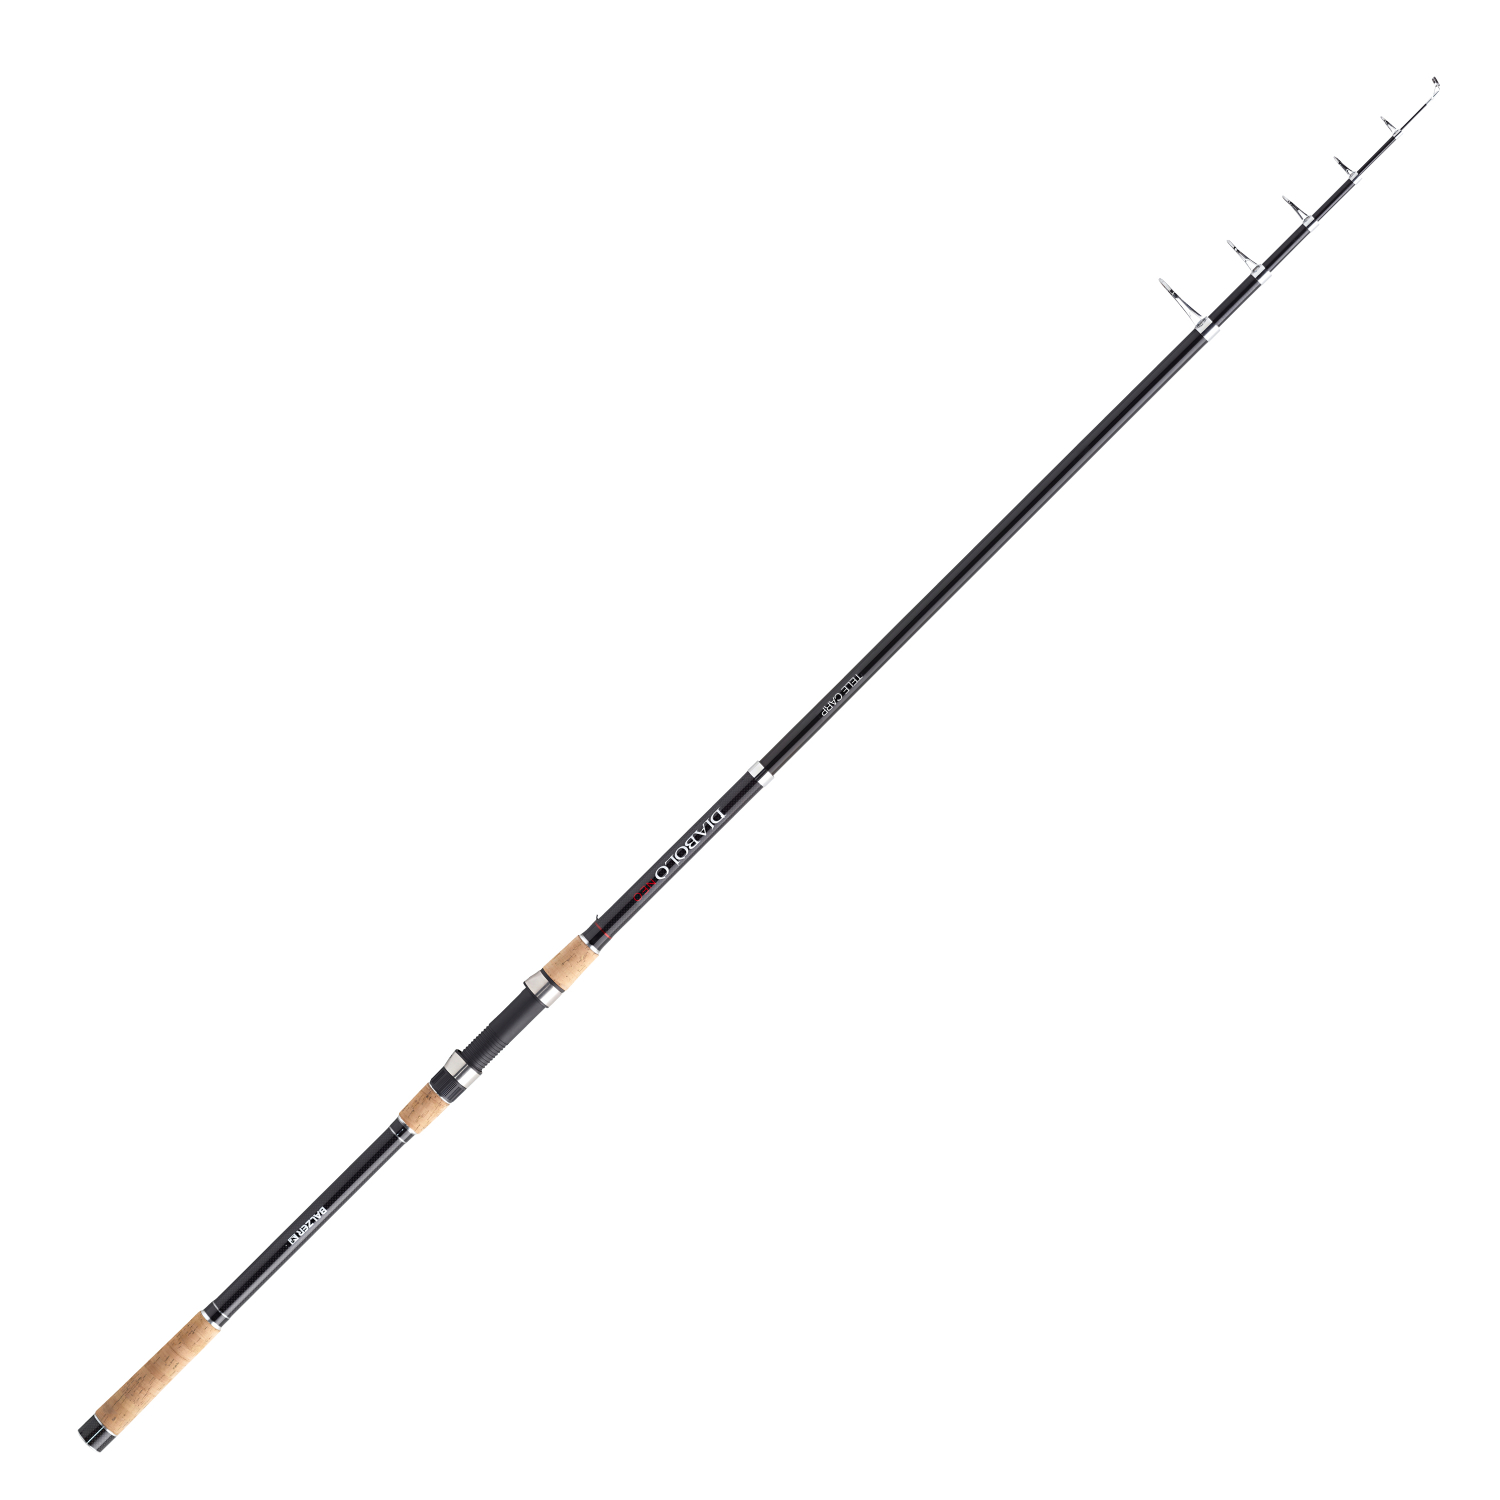 Balzer Balzer Diabolo Neo Tele Carp Fishing Rod 